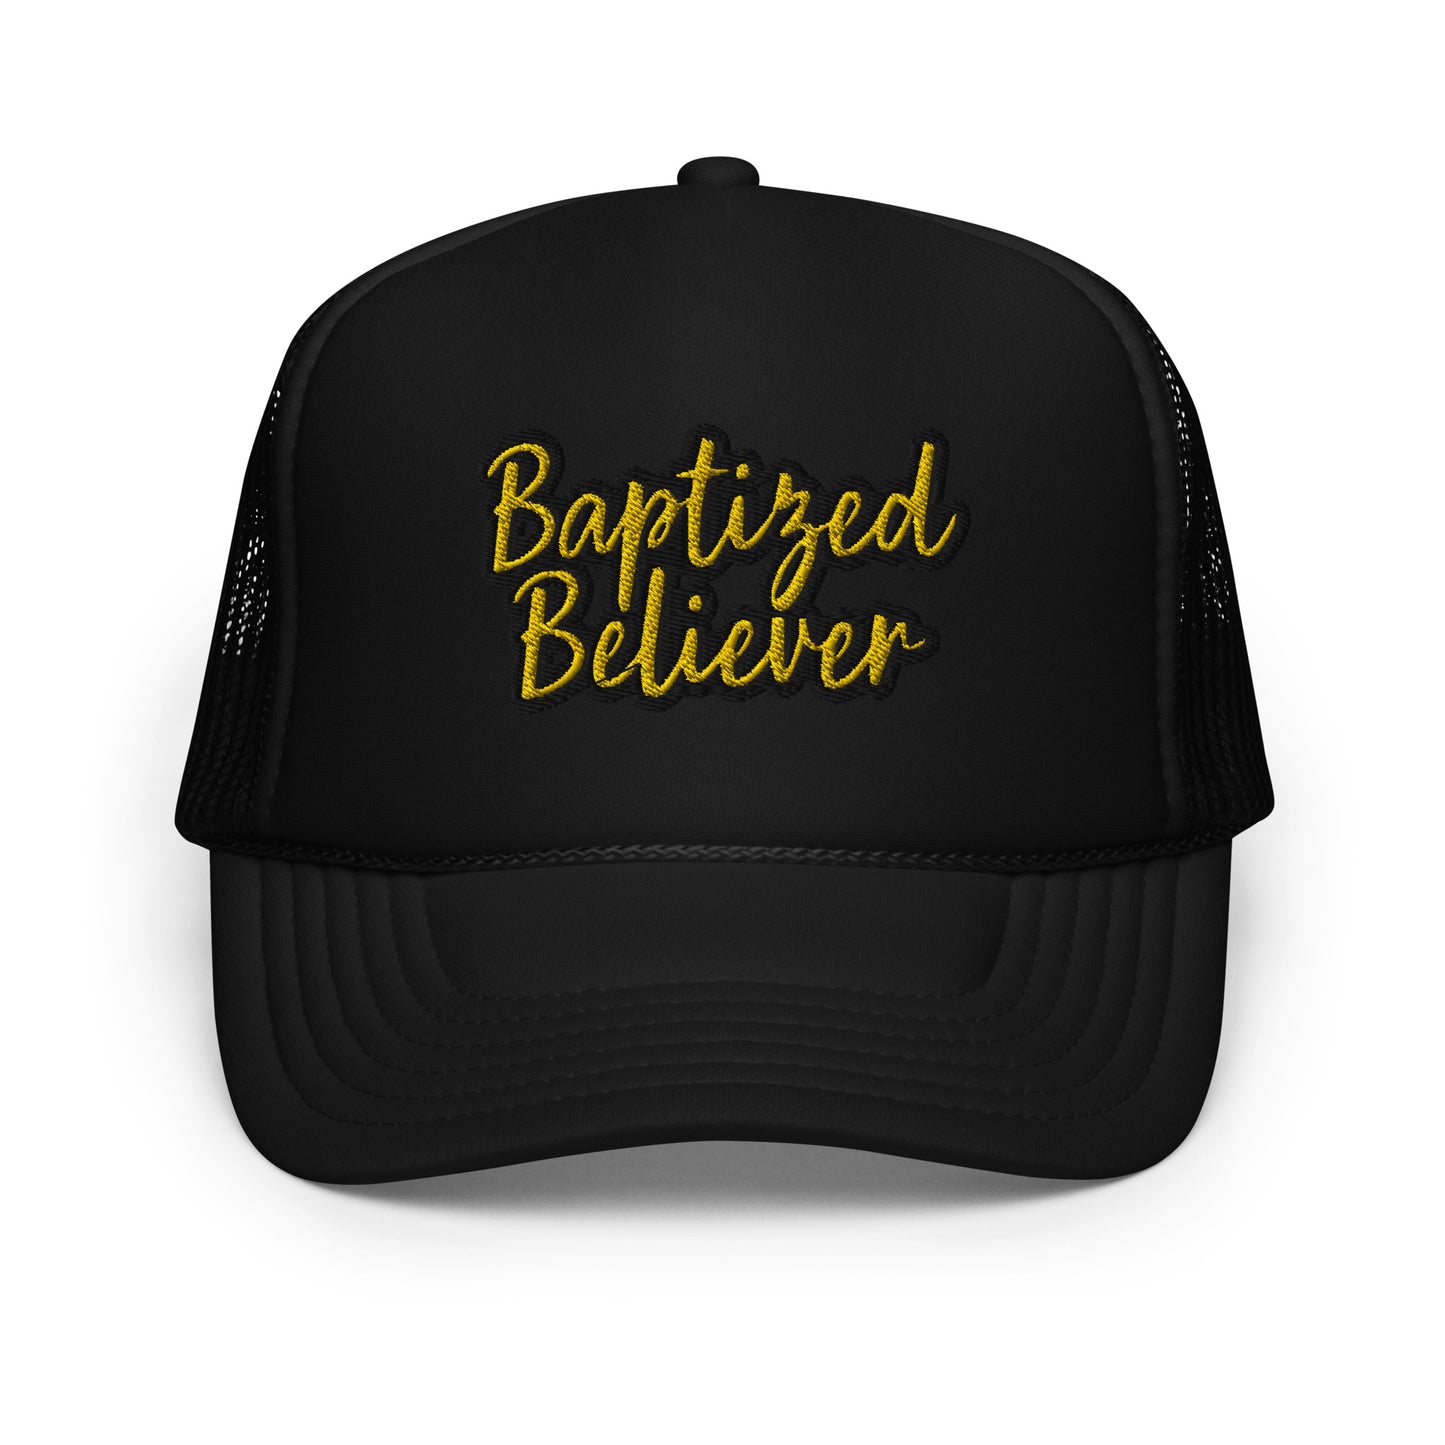 Baptized Believer foam trucker hat outlined